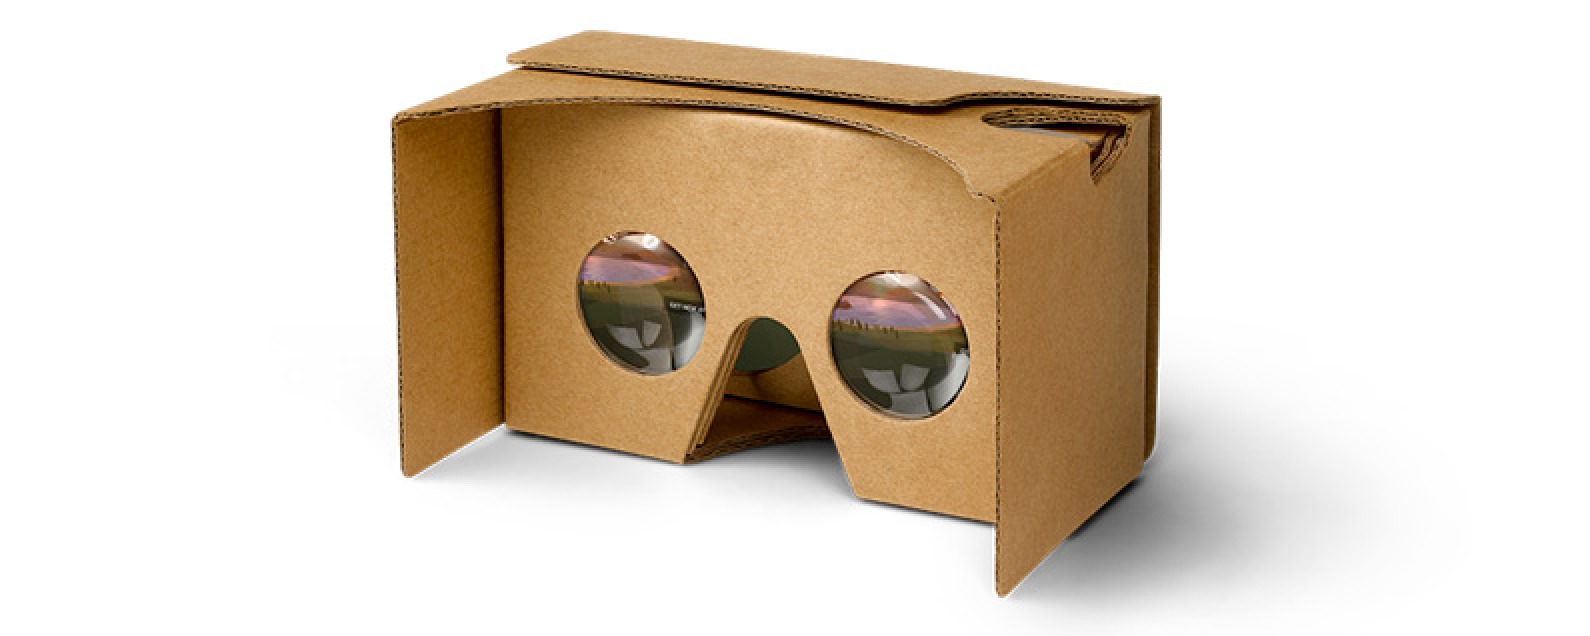 Revisión: ¡El juego Space Box vuelve a divertir tus auriculares VR baratos!